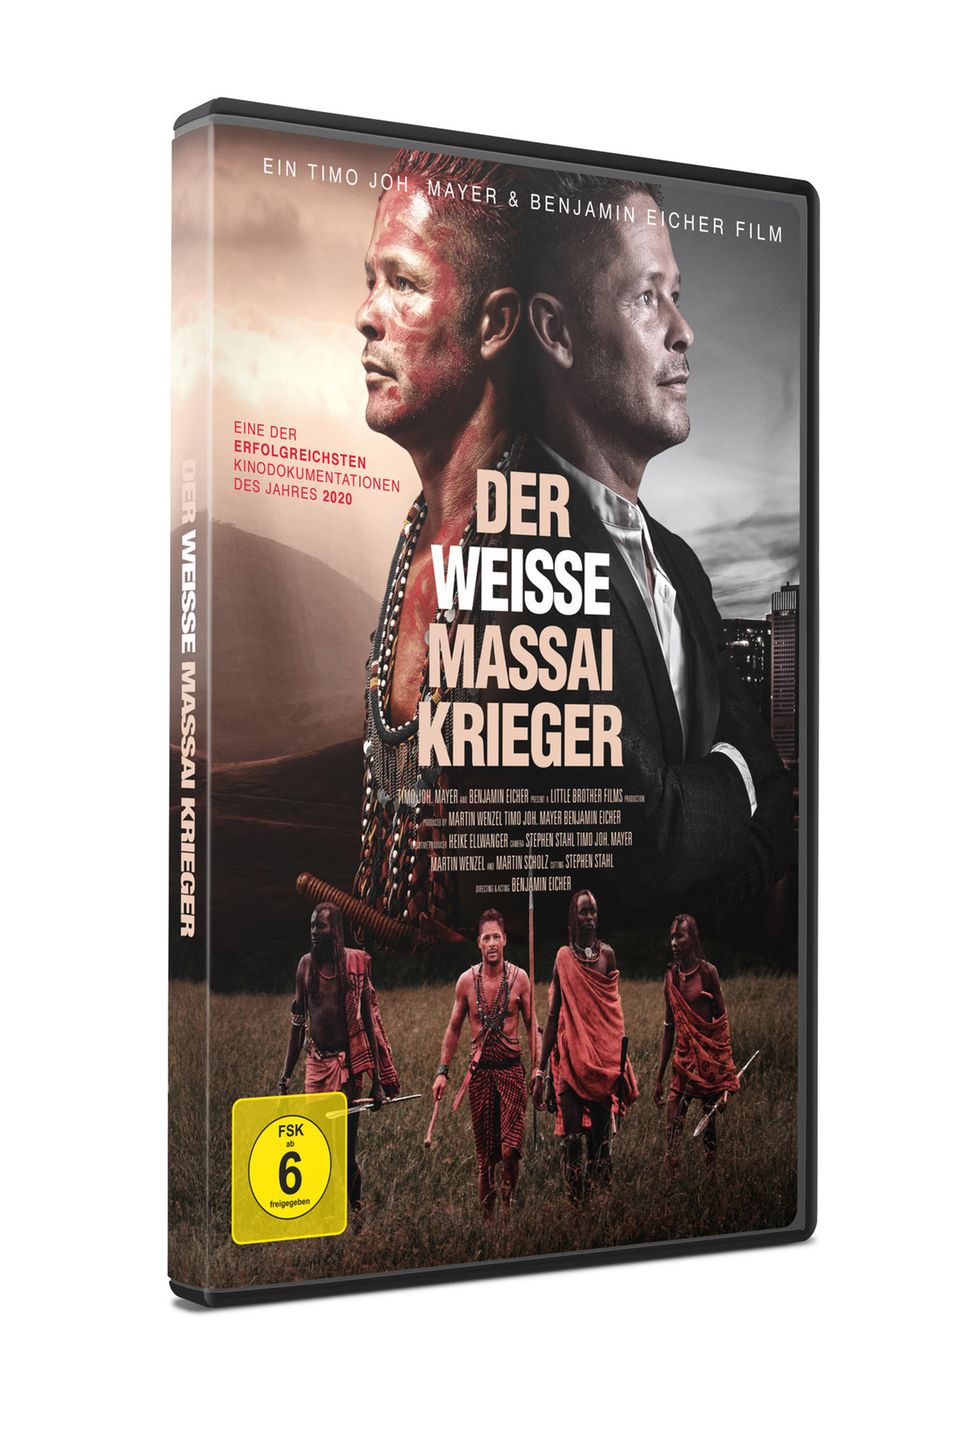 DVD-Cover vom Dokumentar-Film "Der weiße Massai-Krieger".